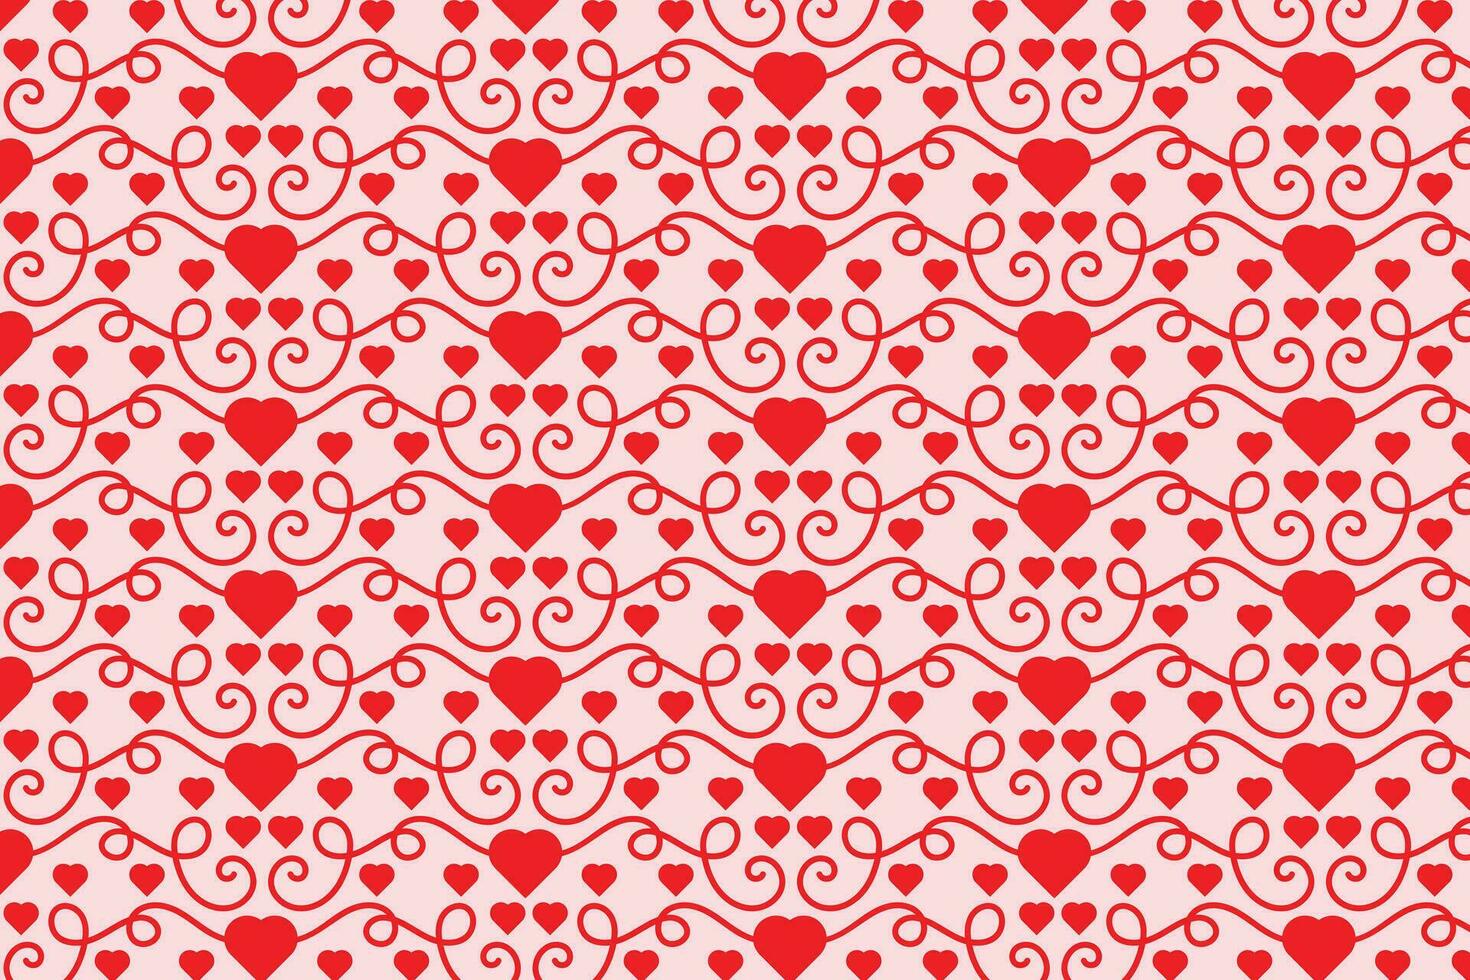 bloeit wervelende harten naadloos patroon, abstract harten wervelingen patroon, valentijnsdag dag elegant naadloos achtergrond, gekruld harten herhalen achtergrond, rood liefde romantisch structuur omhulsel papier vector